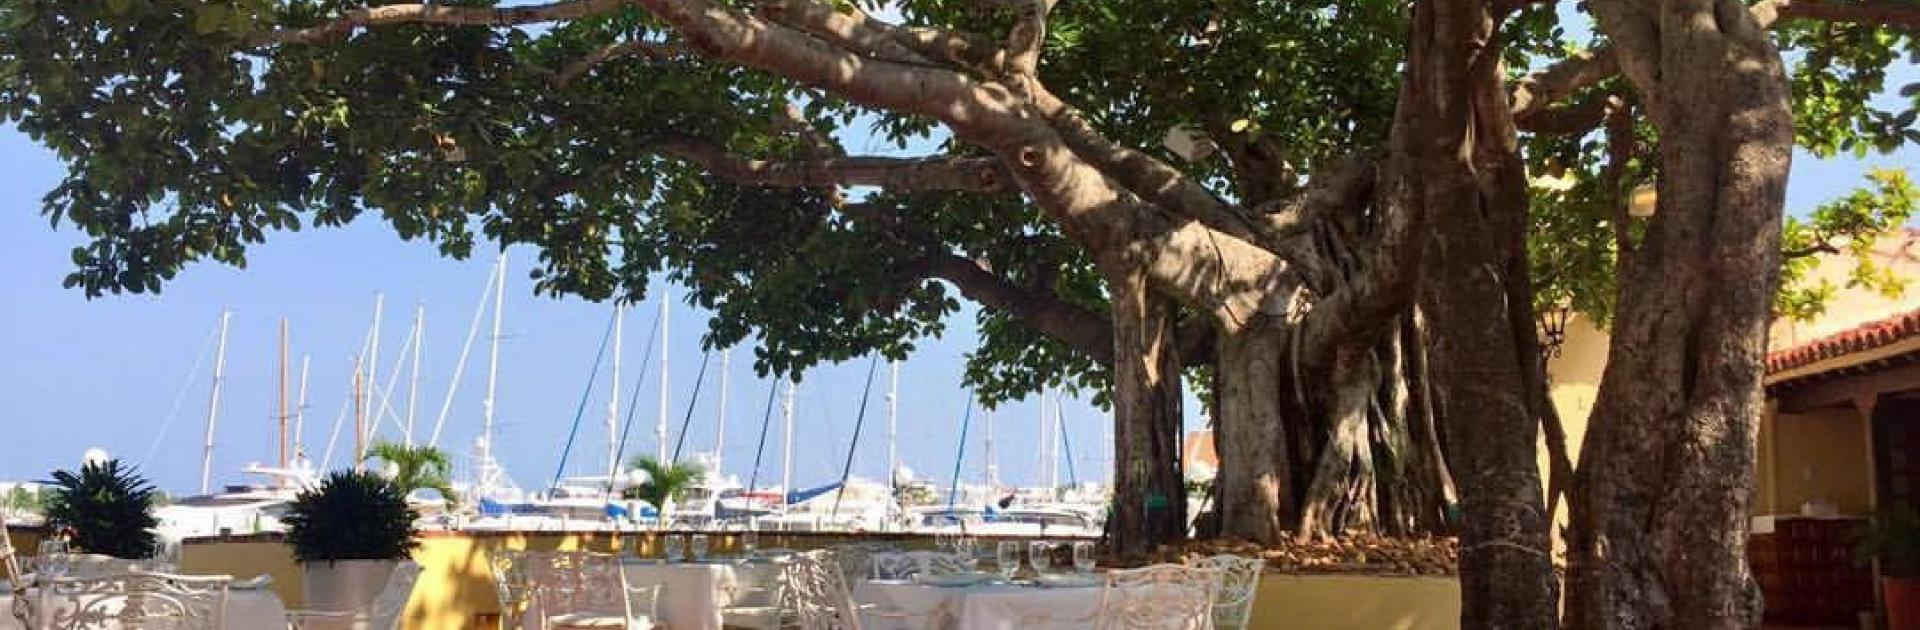 Restaurante Club de Pesca, participante de Dónde Restaurant Week 2019 en Cartagena